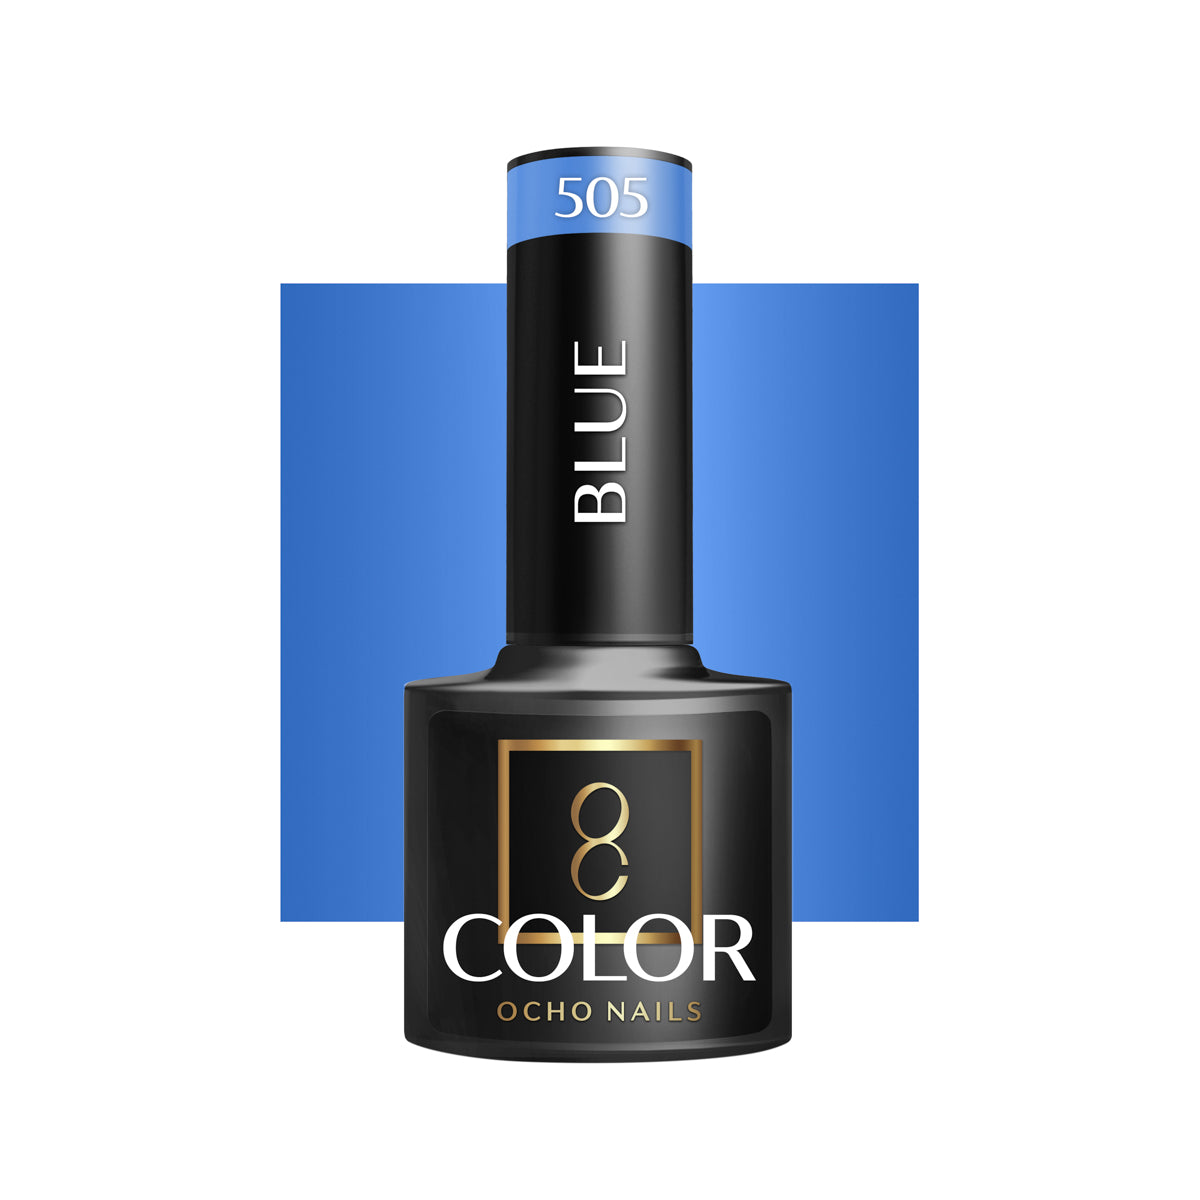 OCHO NAILS Hybride nagellak blauw 505 -5 g